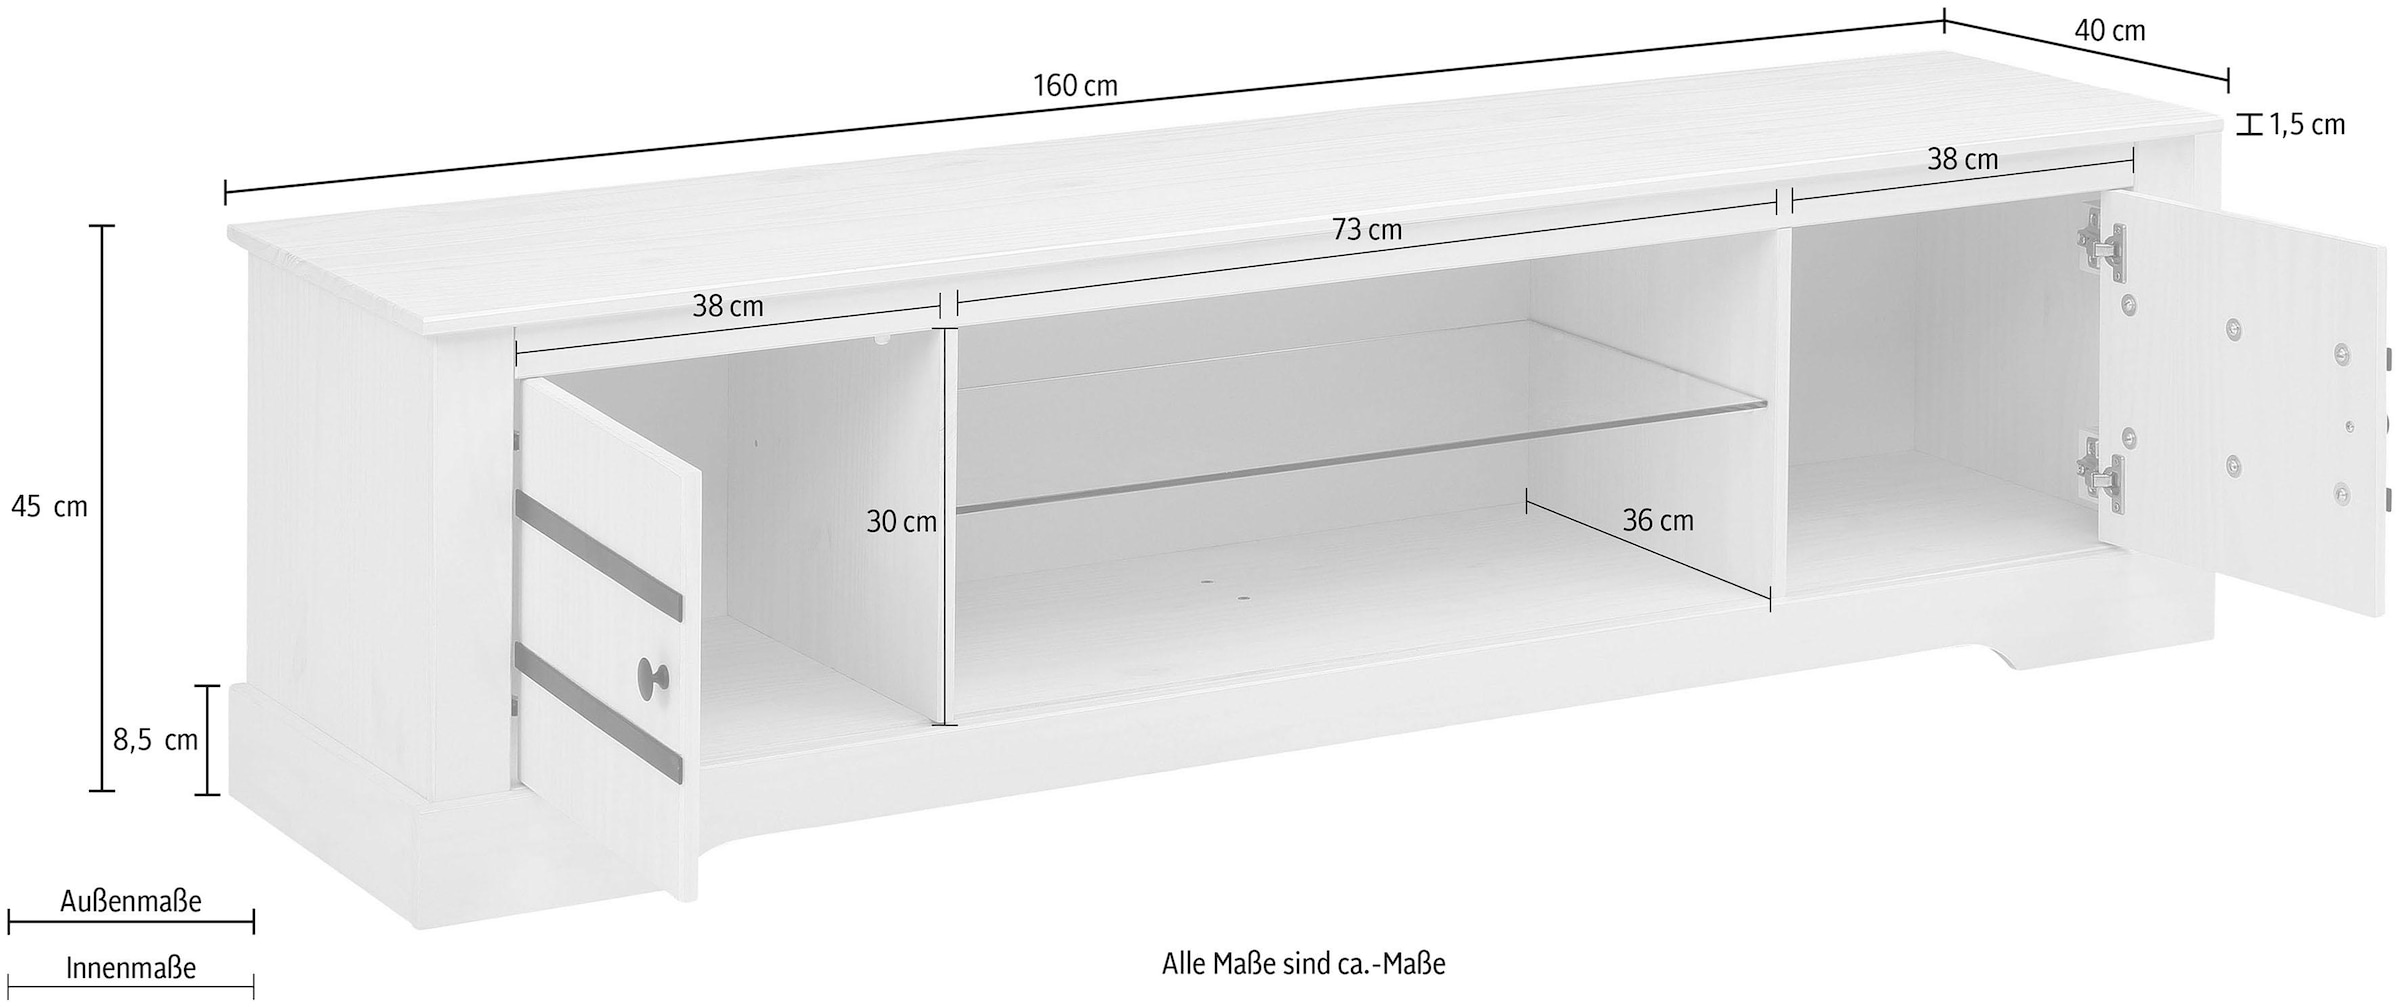 Home affaire Lowboard, aus massivem Kiefernholz, mit einem festen Glasboden, Breite 160 cm